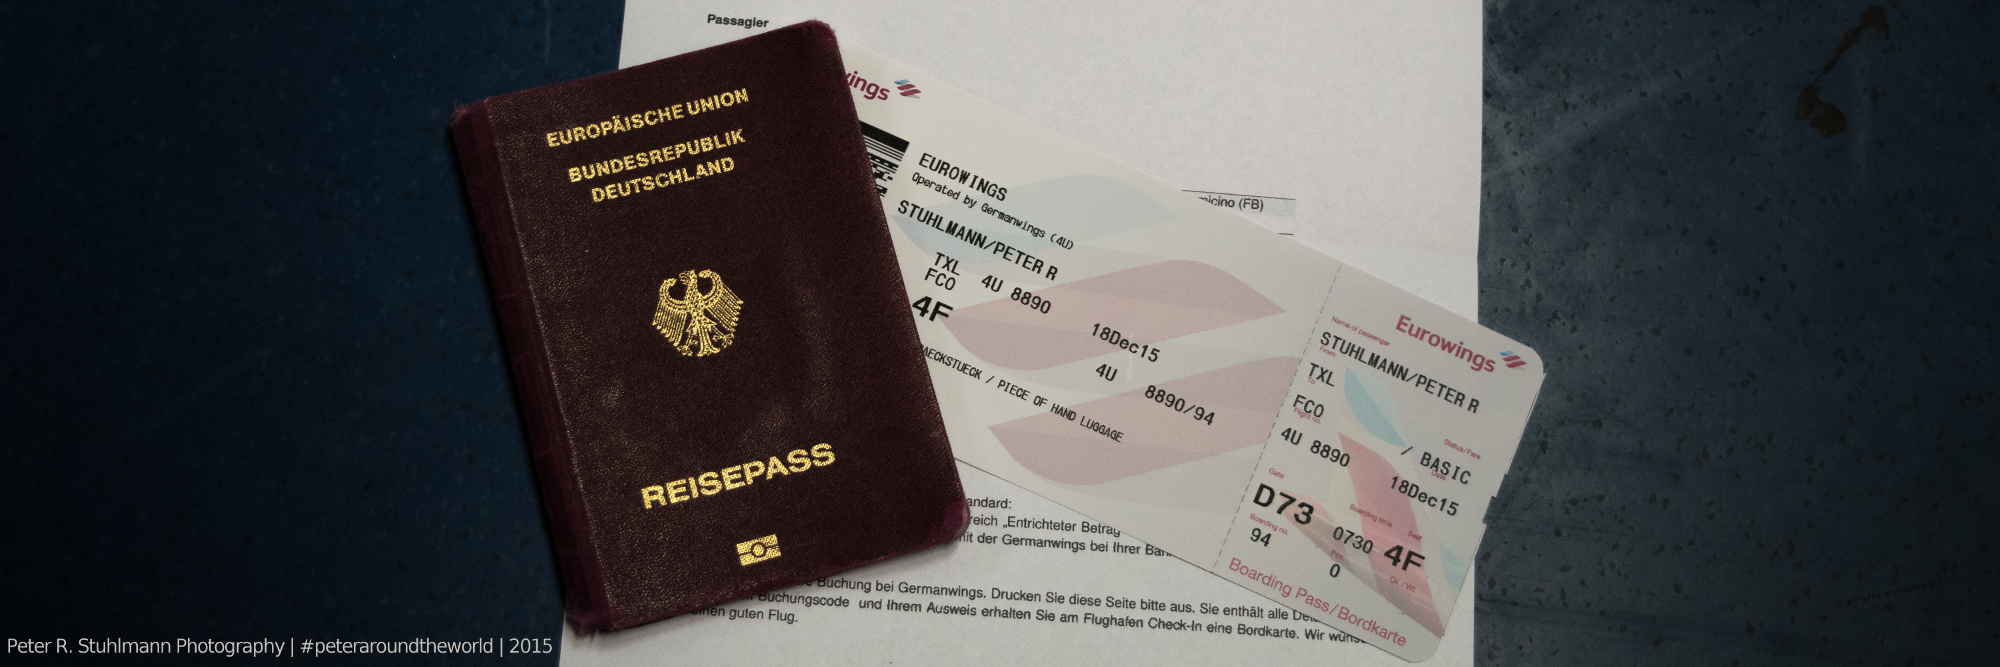 Reisedokumente für meinen Flug nach Italien: Reisepass, Buchungsbestätigung und Boardkarte von Eurowings